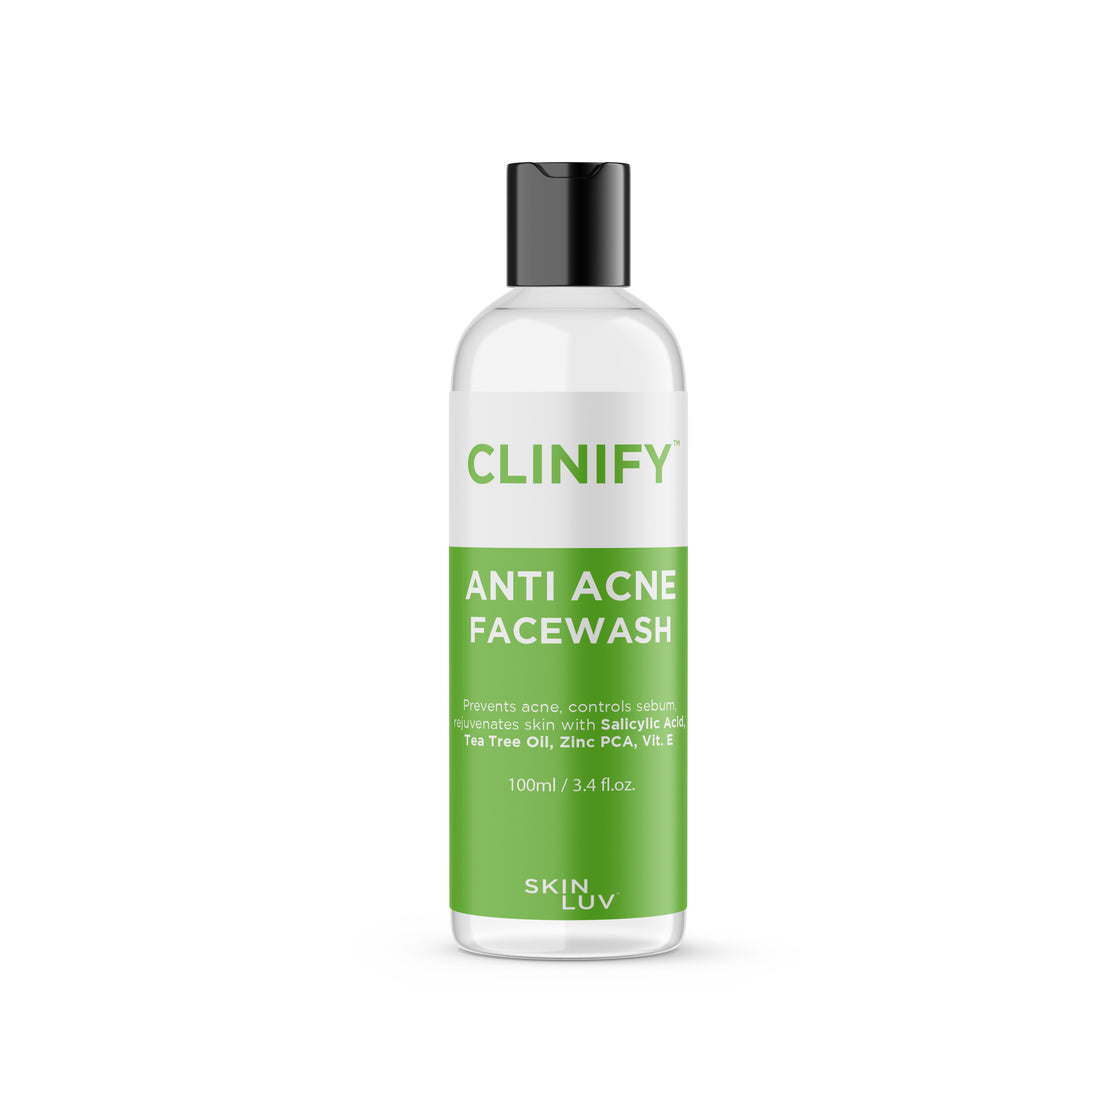 SKINLUV Clinify Anti Acne Facewash